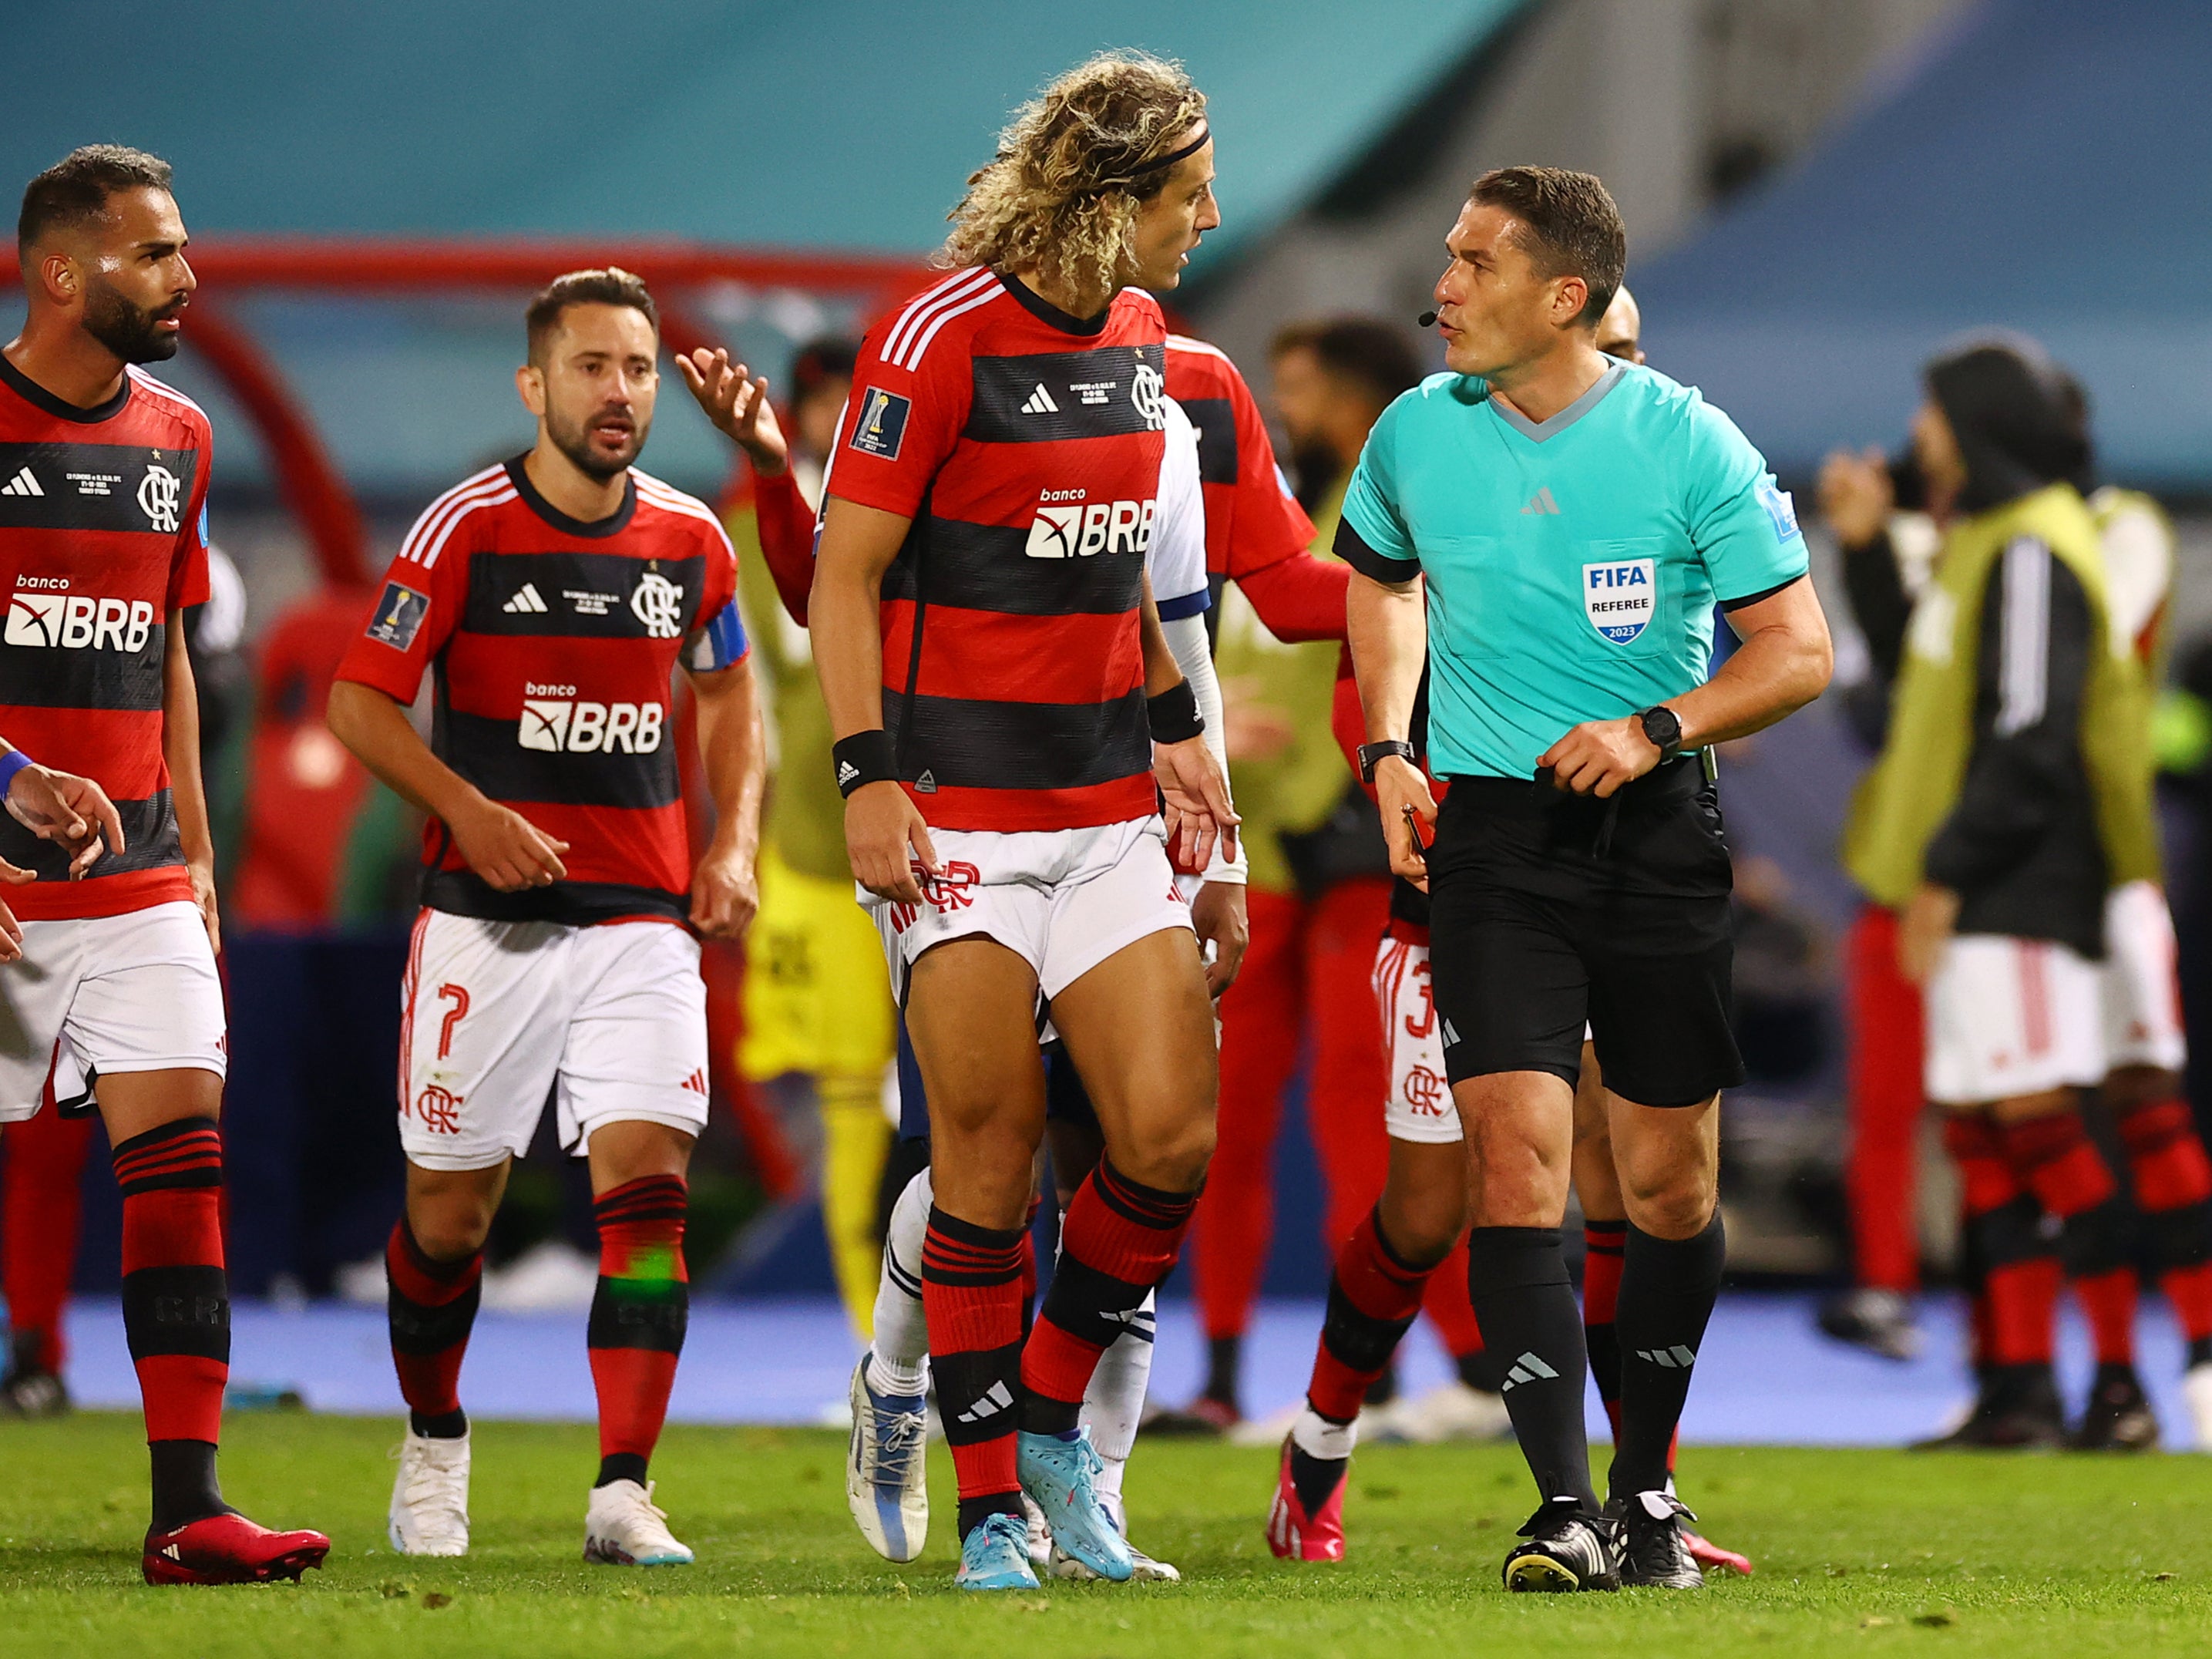 Flamengo vs al hilal